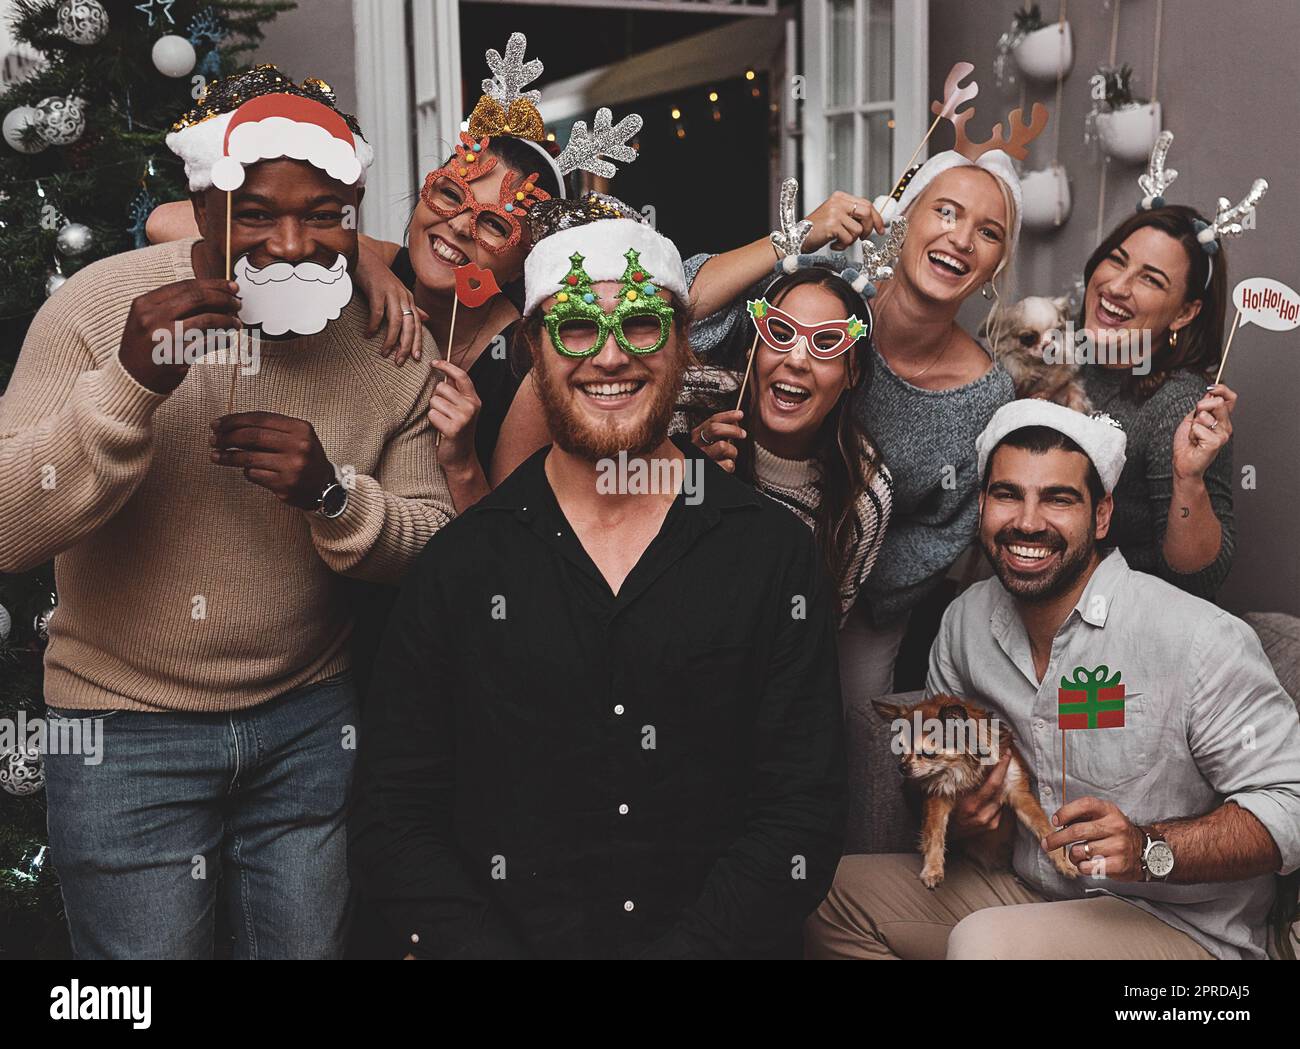 Wir sind dumm, aber wir sind etwas Besonderes. Porträt einer fröhlichen Gruppe von Freunden, die festliche Hüte tragen, während sie zu hause während der weihnachtszeit für ein Foto posieren. Stockfoto